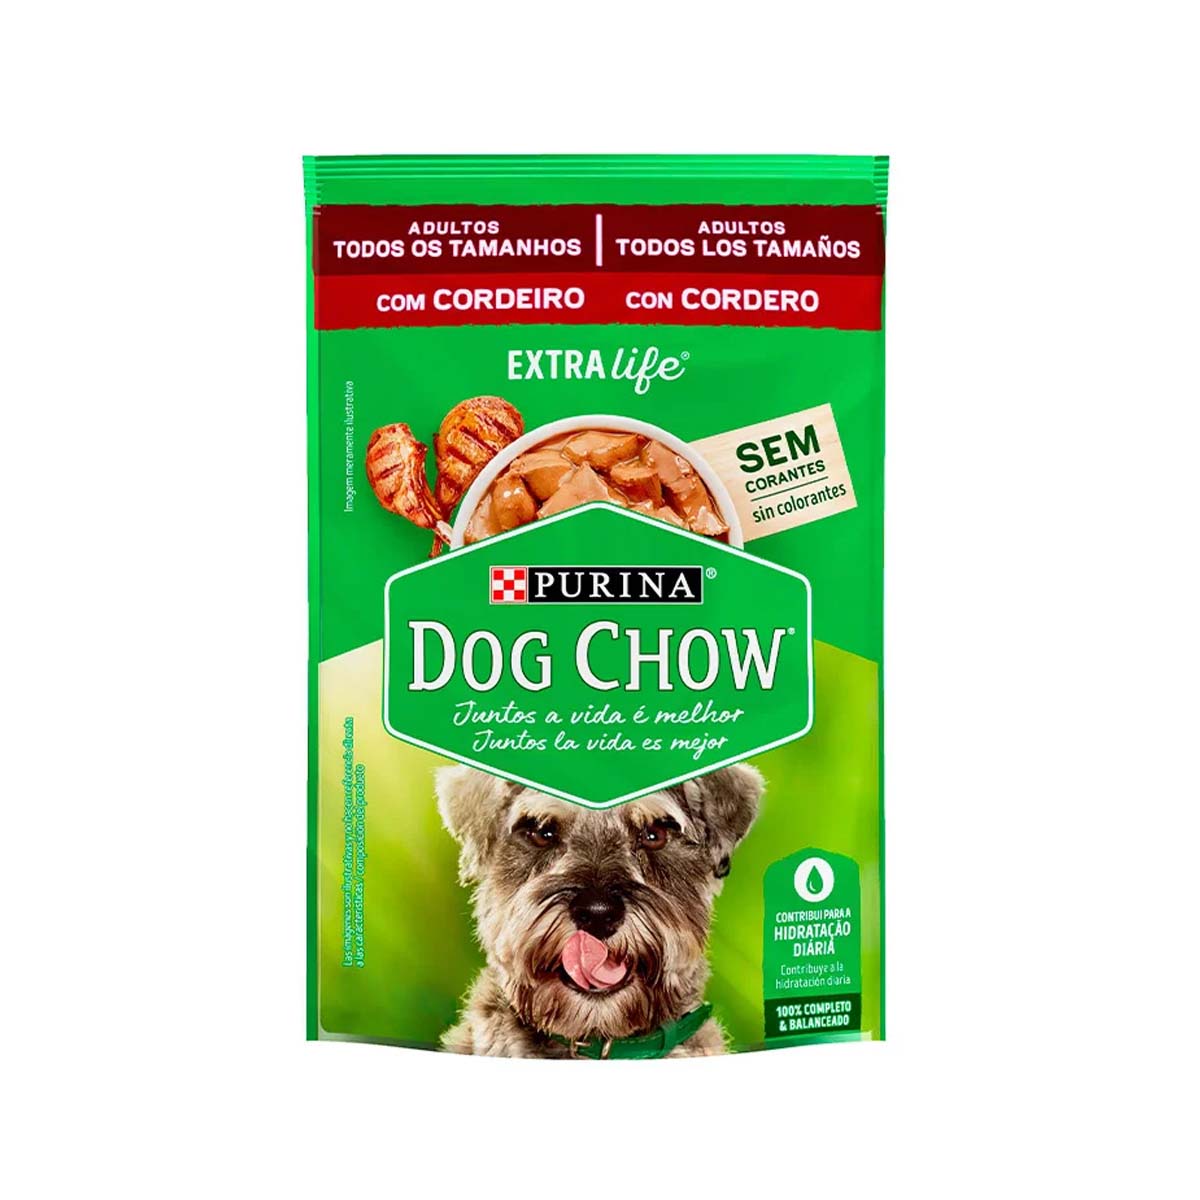 Ração Dog Chow Adultos Todos Os Tamanhos Sabor Cordeiro 100g